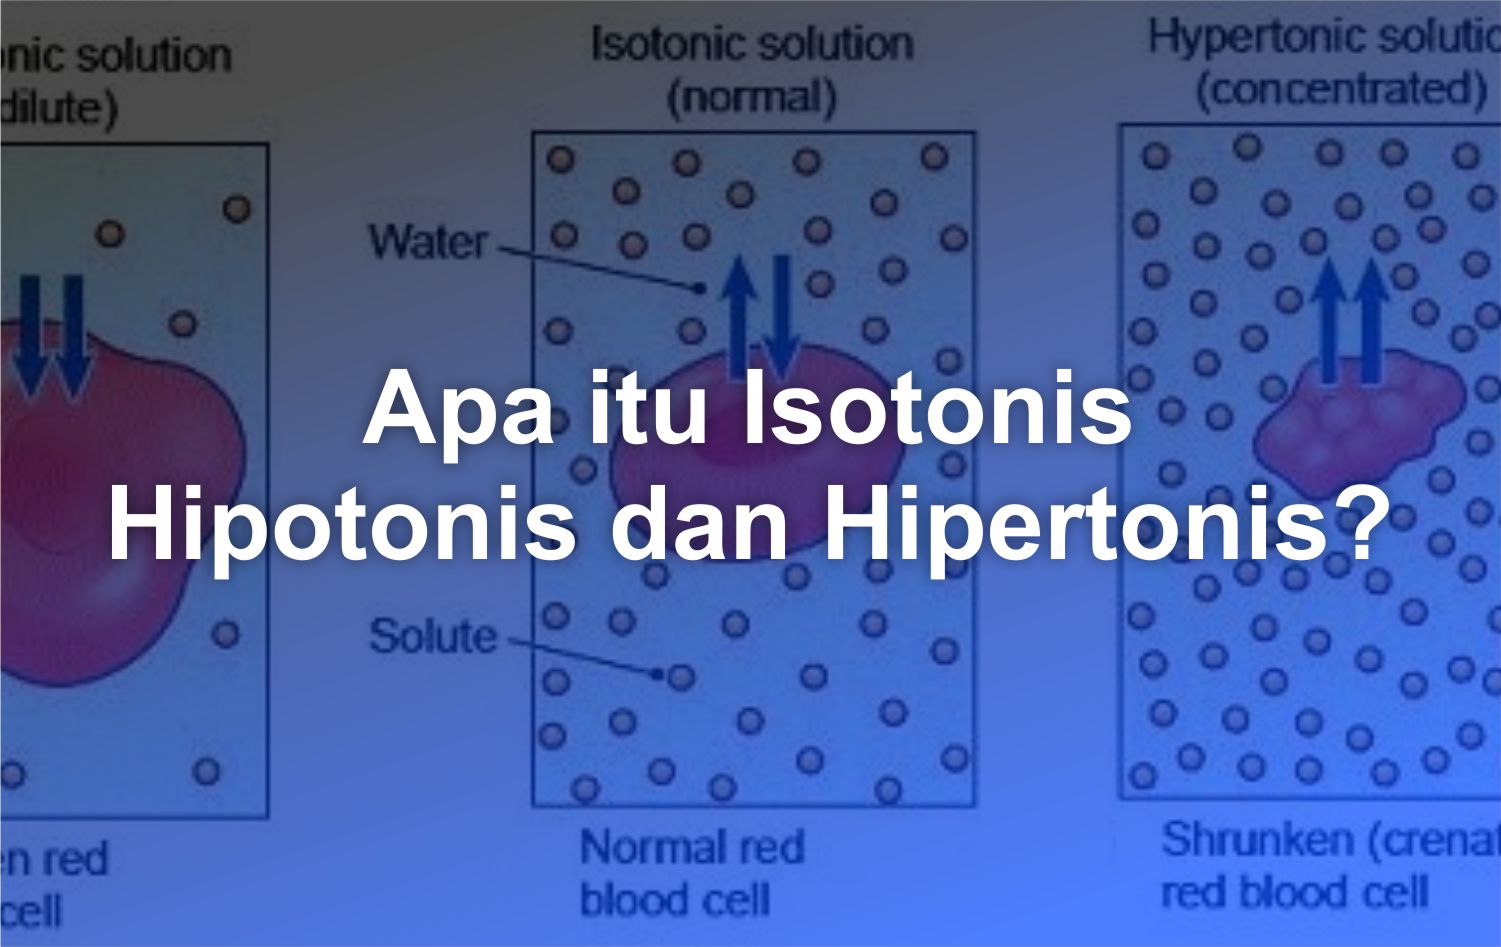 APA ITU ISOTONIS HIPOTONIS DAN HIPERTONIS